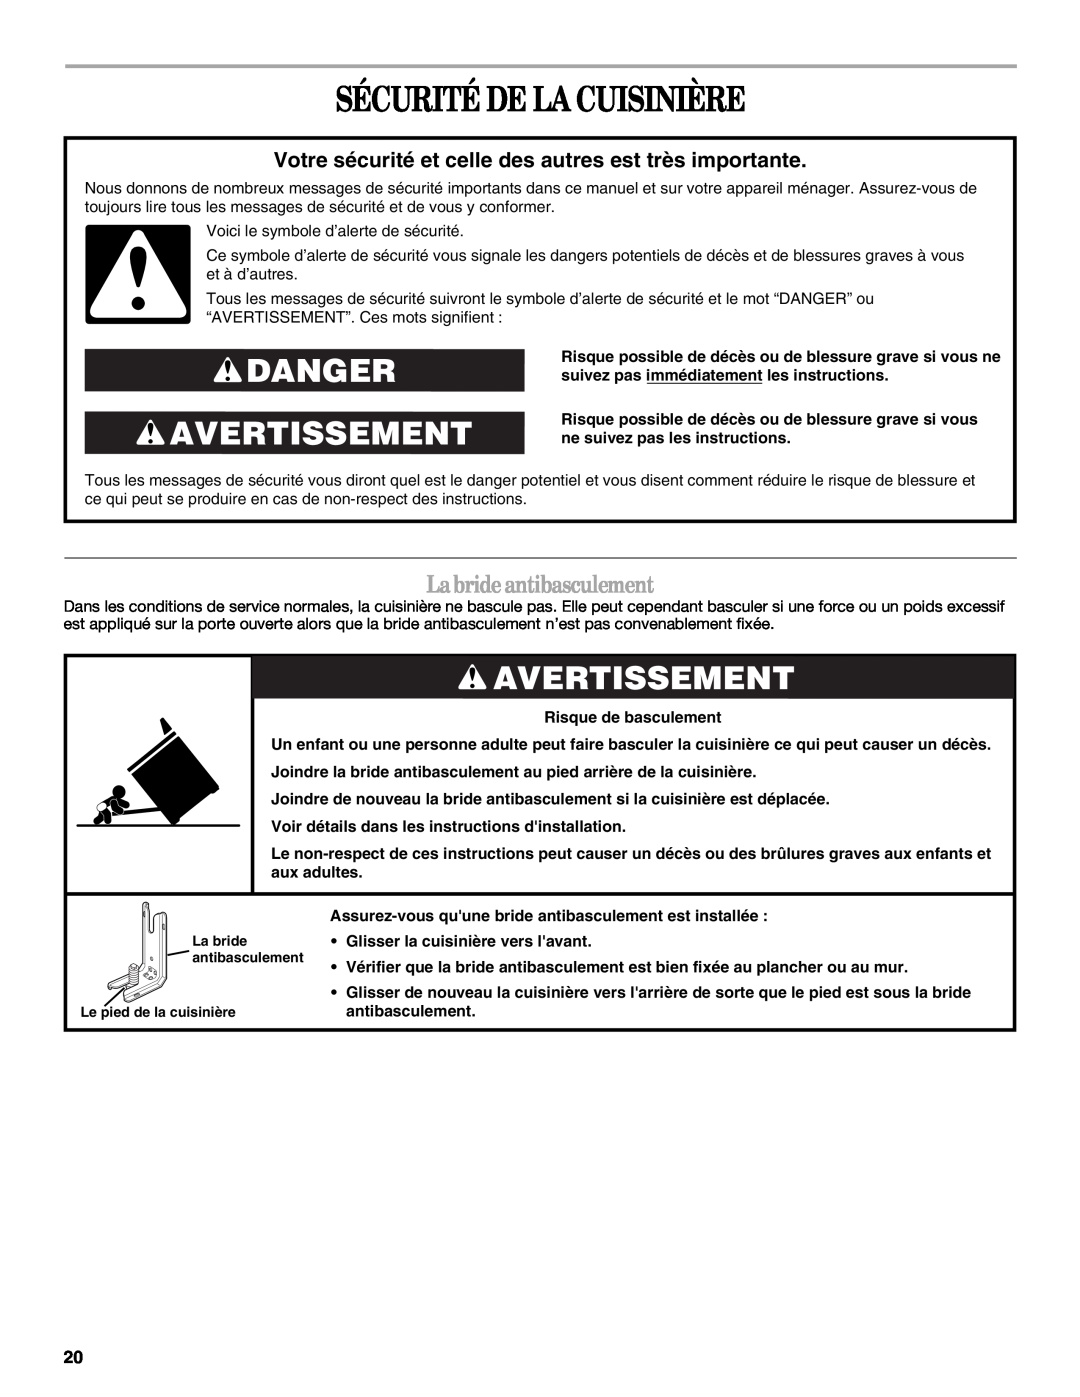 Whirlpool GY397LXUS manual Sécurité De La Cuisinière, Danger Avertissement, Labrideantibasculement 